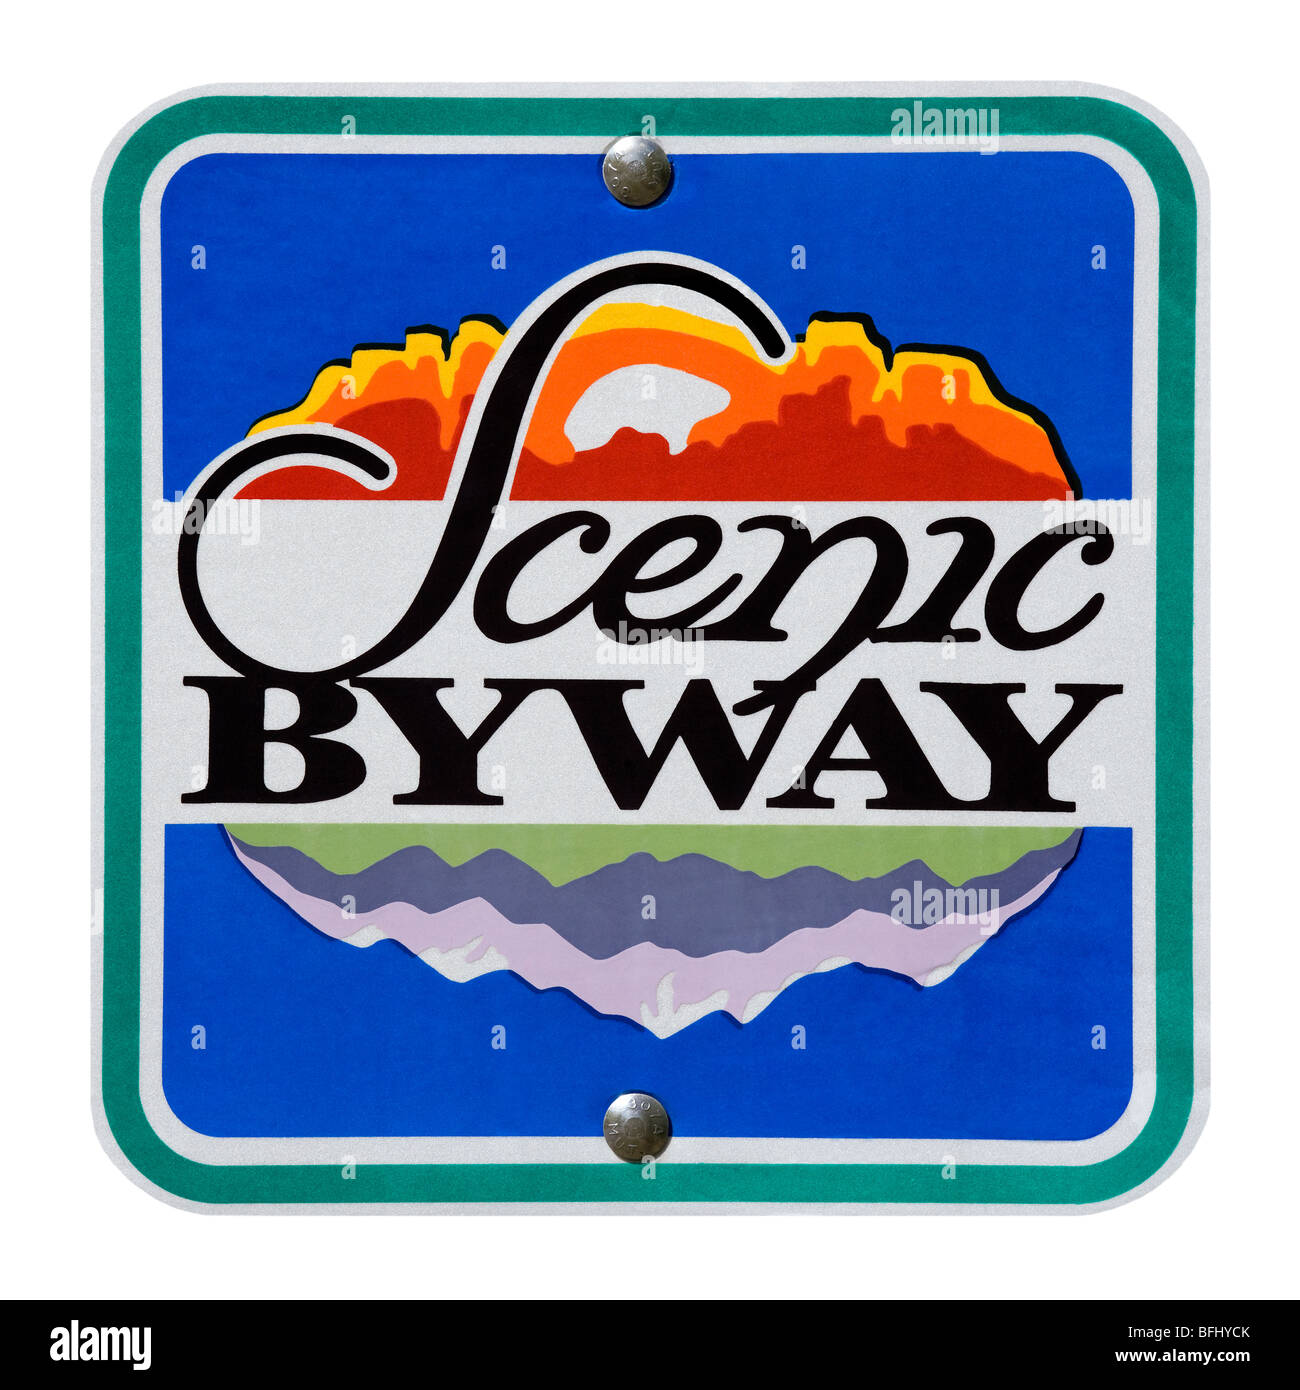 Amerikanische Straße Zeichen Richtung Marker Scenic Byway entlang der Mount Mt Nebo Schleife Byway in Utah USA. Ausschnitt ausschneiden isoliert Stockfoto